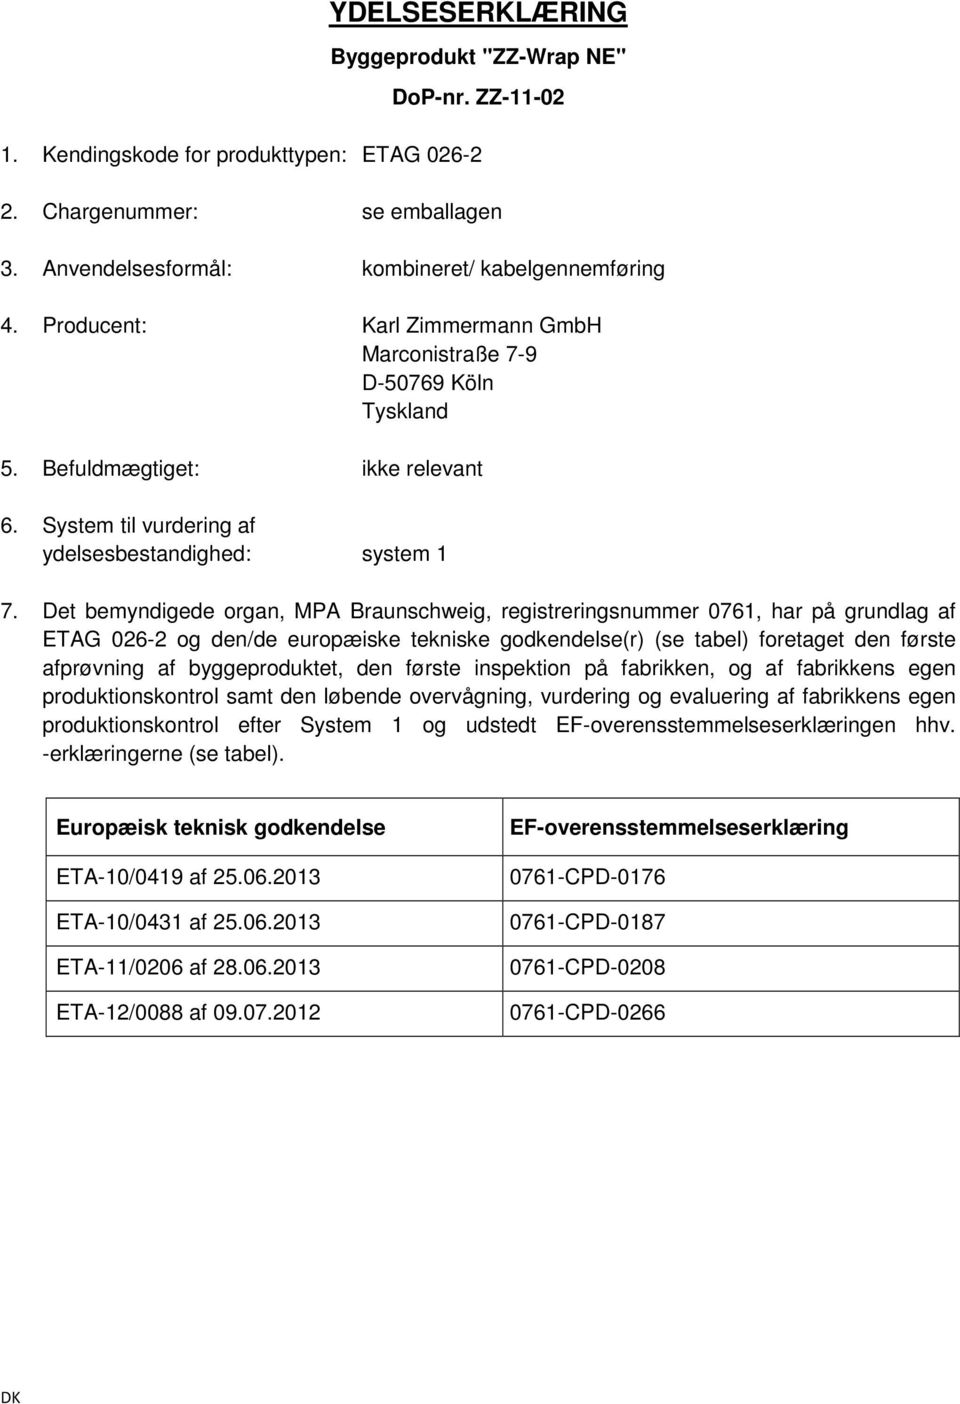 Det bemyndigede organ, MPA Braunschweig, registreringsnummer 0761, har på grundlag af ETAG 026-2 og den/de europæiske tekniske godkendelse(r) (se tabel) foretaget den første afprøvning af